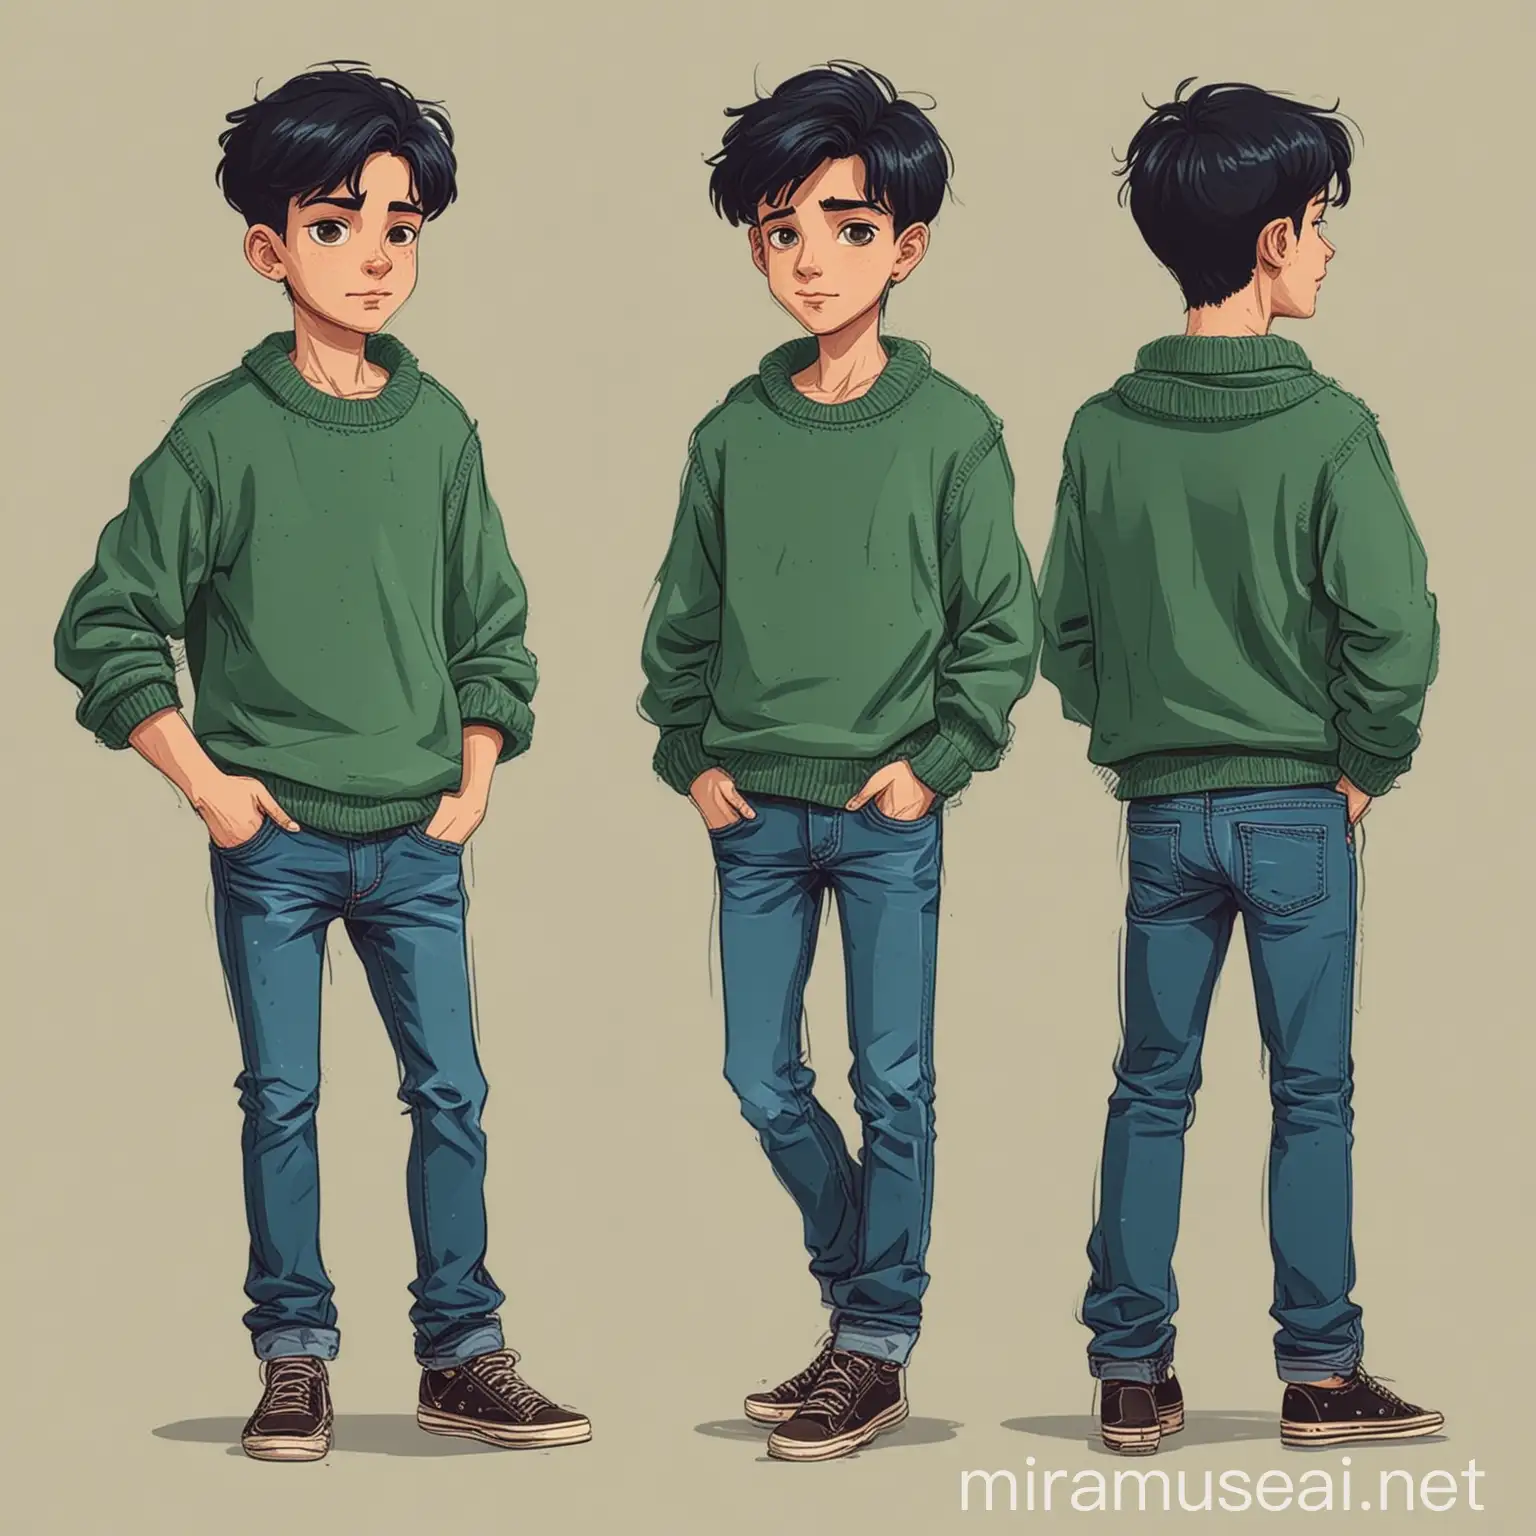 нарисуй персонажа мальчика в зелёном свитере и с чёрныме волосами и в синем джинсах в векторном плоском стиле.